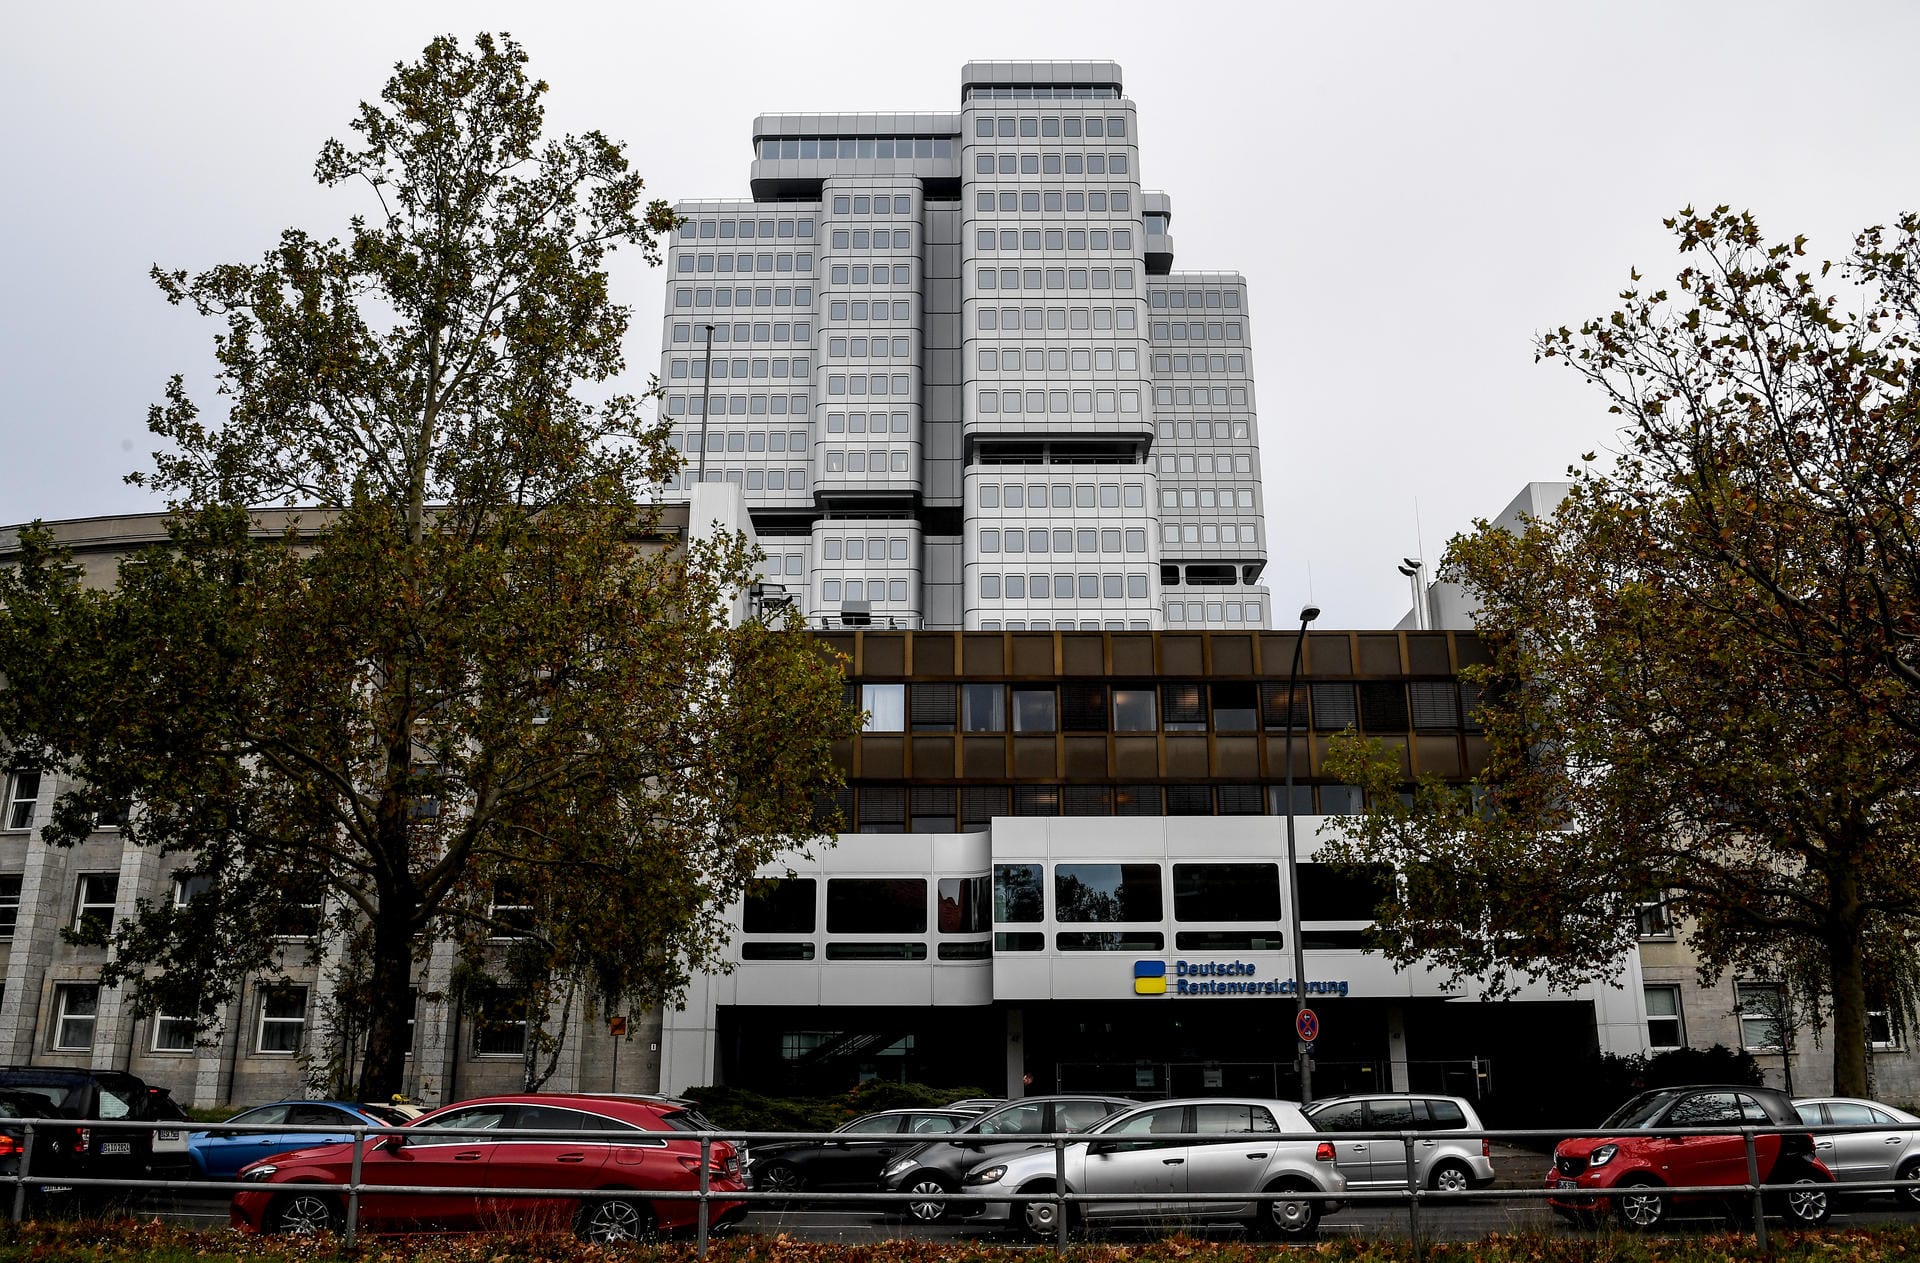 Büroturm der Deutschen Rentenversicherung in Berlin: Der Turm steht wegen seiner hohen Renovierungskosten im Schwarzbuch 2019/20 vom Bund der Steuerzahler.